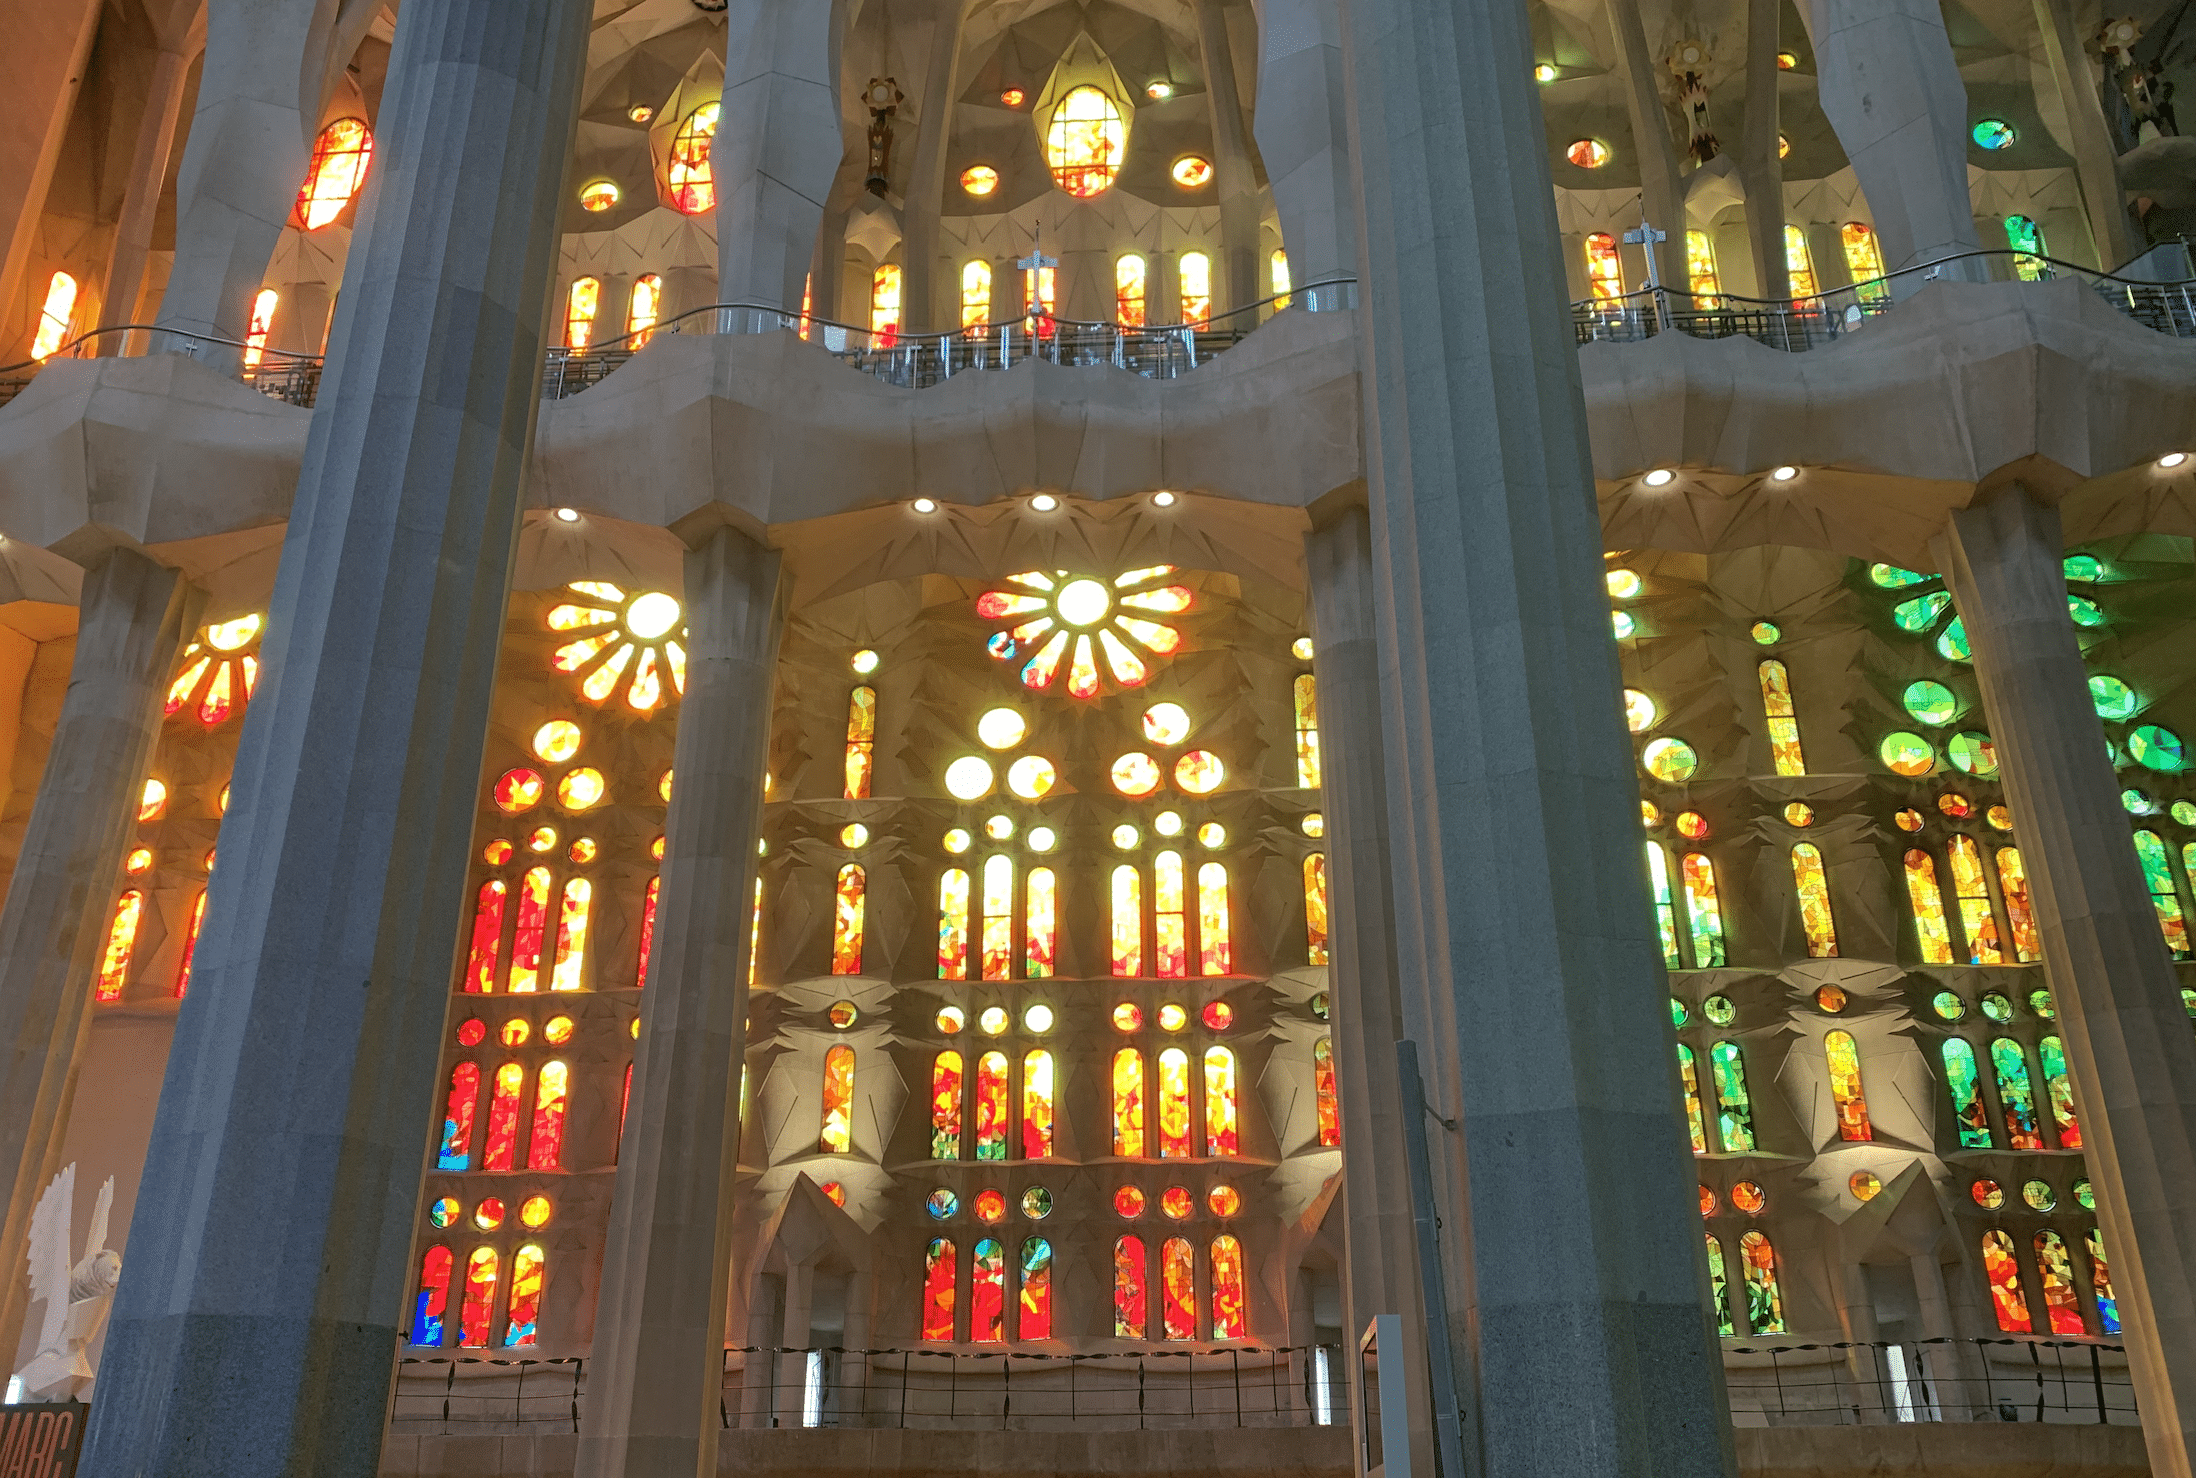 vitraux de la sagrada familia